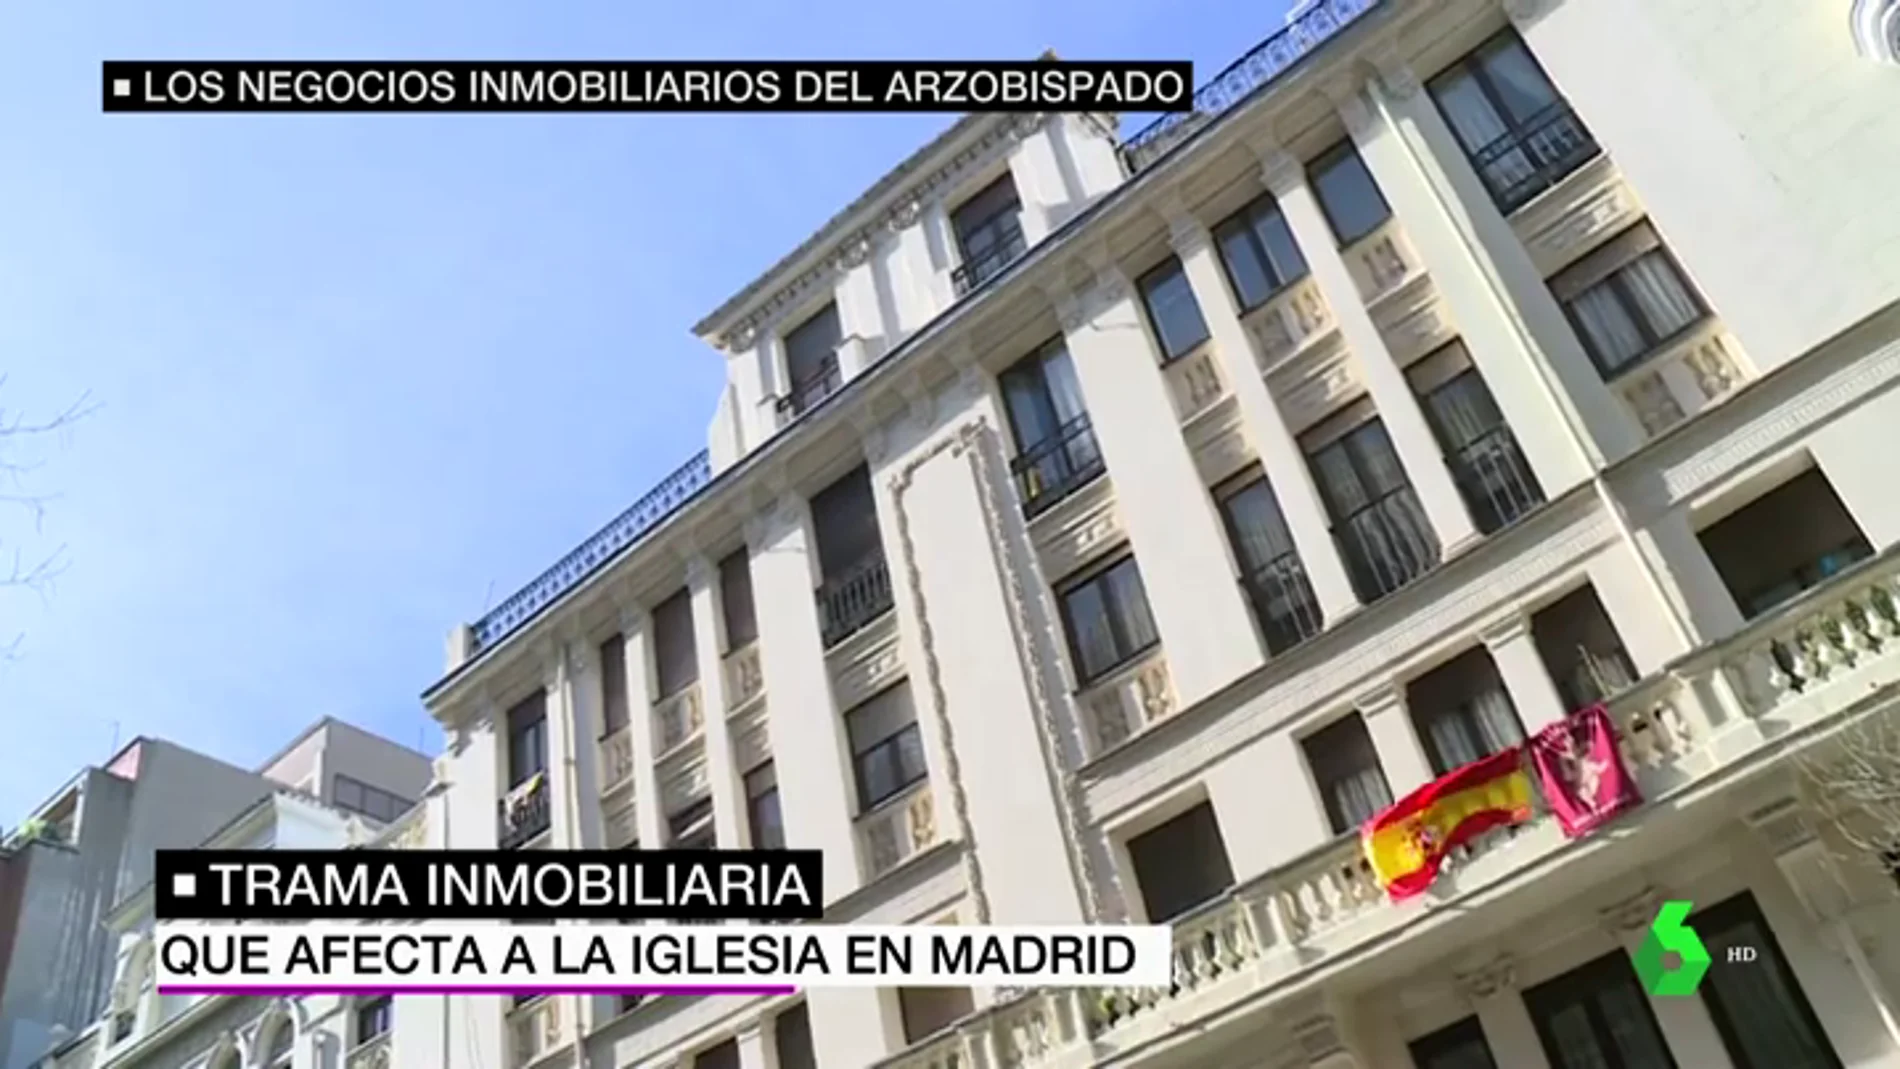 Los negocios inmobiliarios de la Iglesia en Madrid que atemorizan a centenares de familias: "Que nos echen a la calle porque el Arzobispado ha chanchulleado"